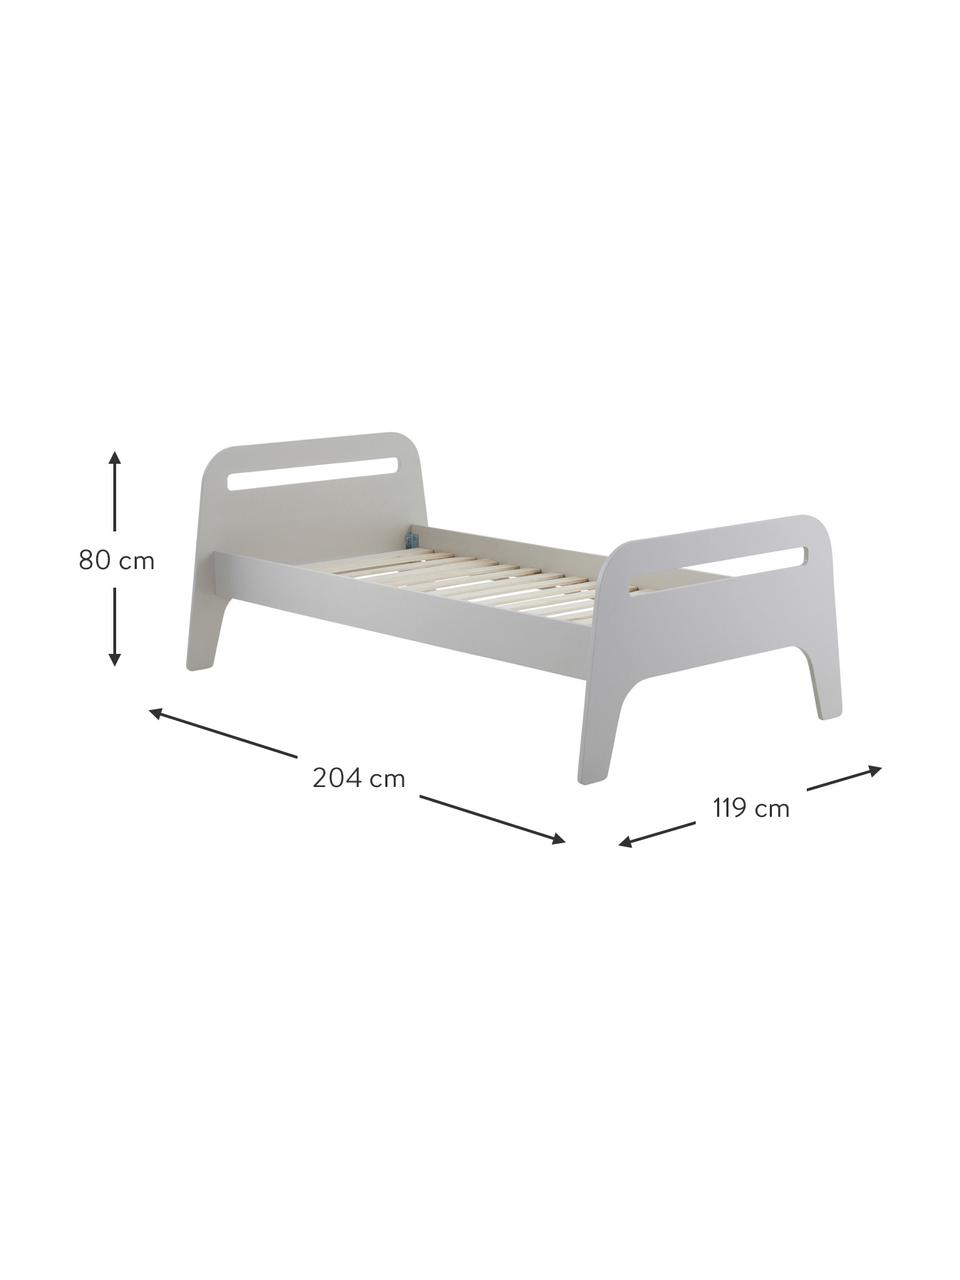 Dřevěná dětská postel Jibbo, 90 x 200 cm, MDF deska (dřevovláknitá deska střední hustoty), překližka, Šedá, Š 90 cm, D 200 cm